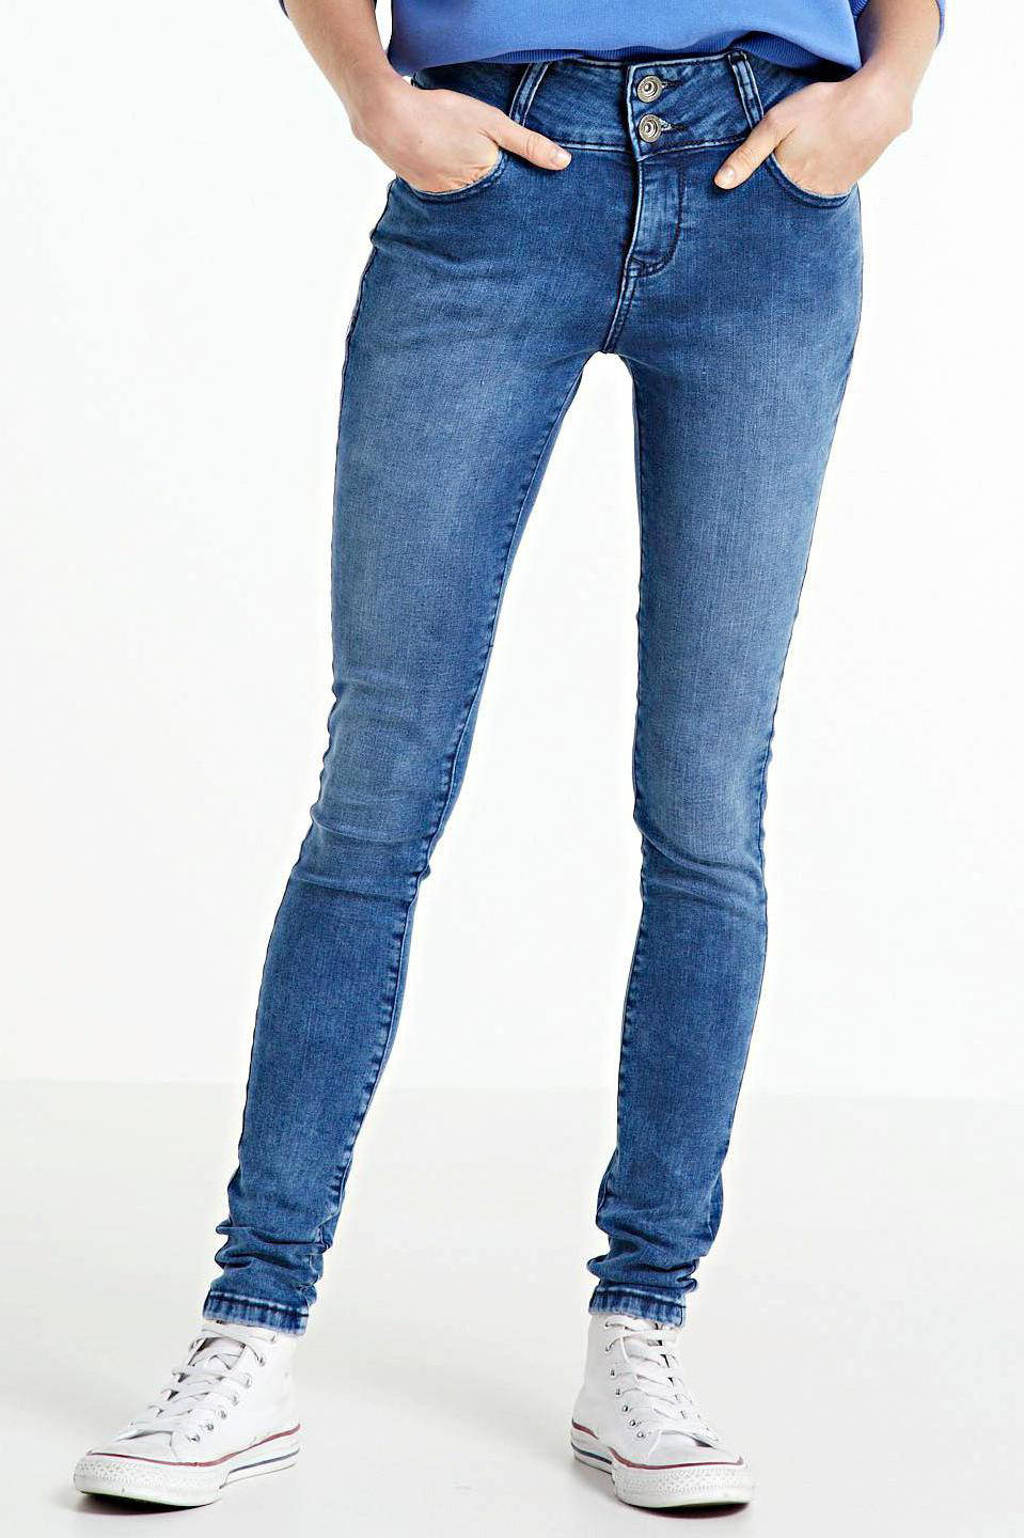 Donkerblauwe dames Cars skinny jeans Amazing van stretchdenim met regular waist en rits- en knoopsluiting